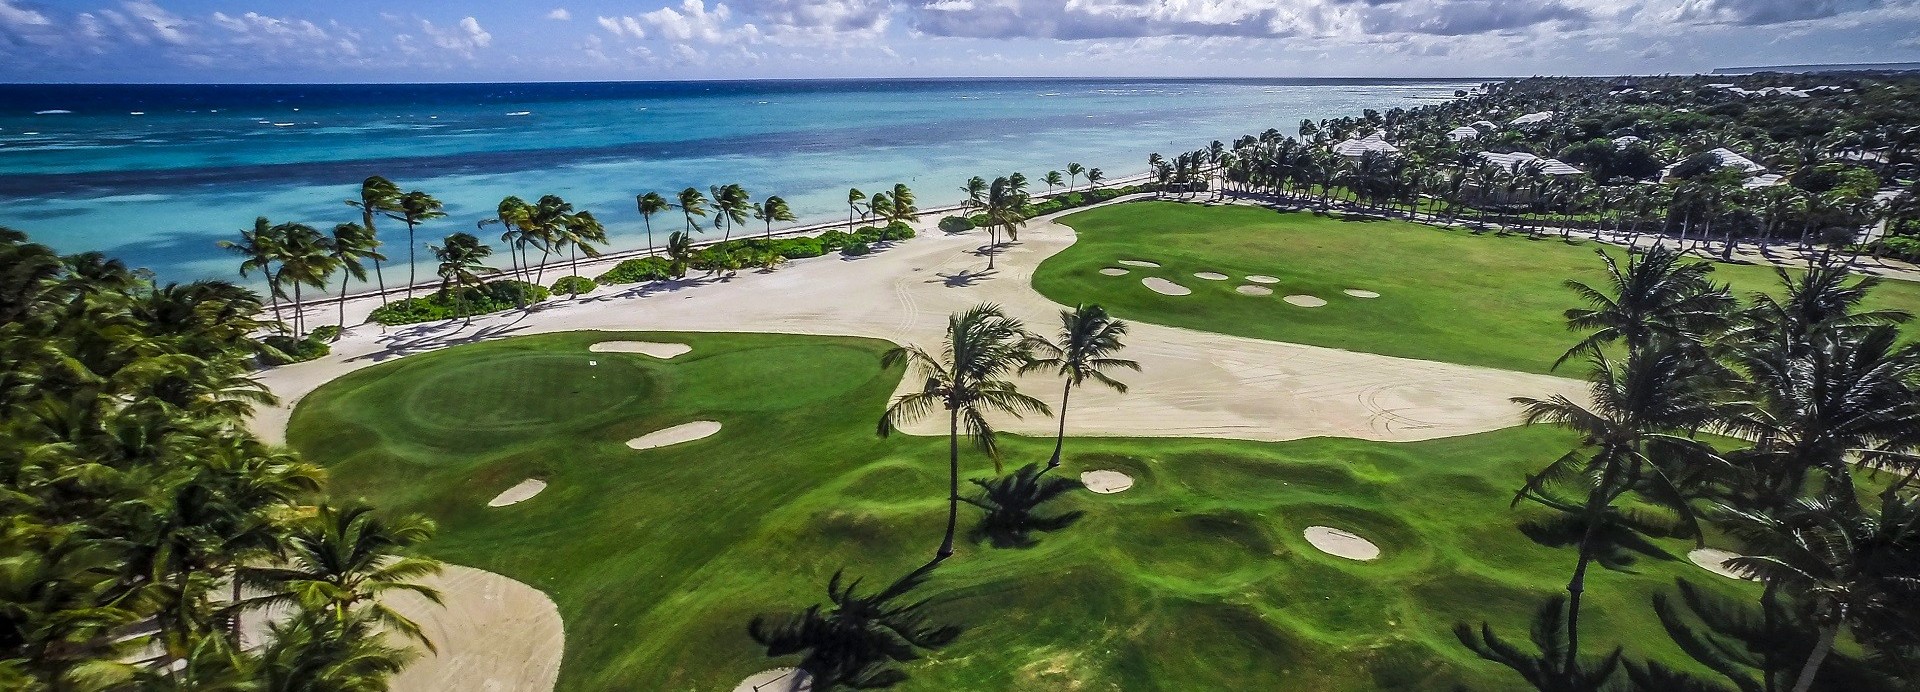 La Cana Golf Club  | Golfové zájezdy, golfová dovolená, luxusní golf